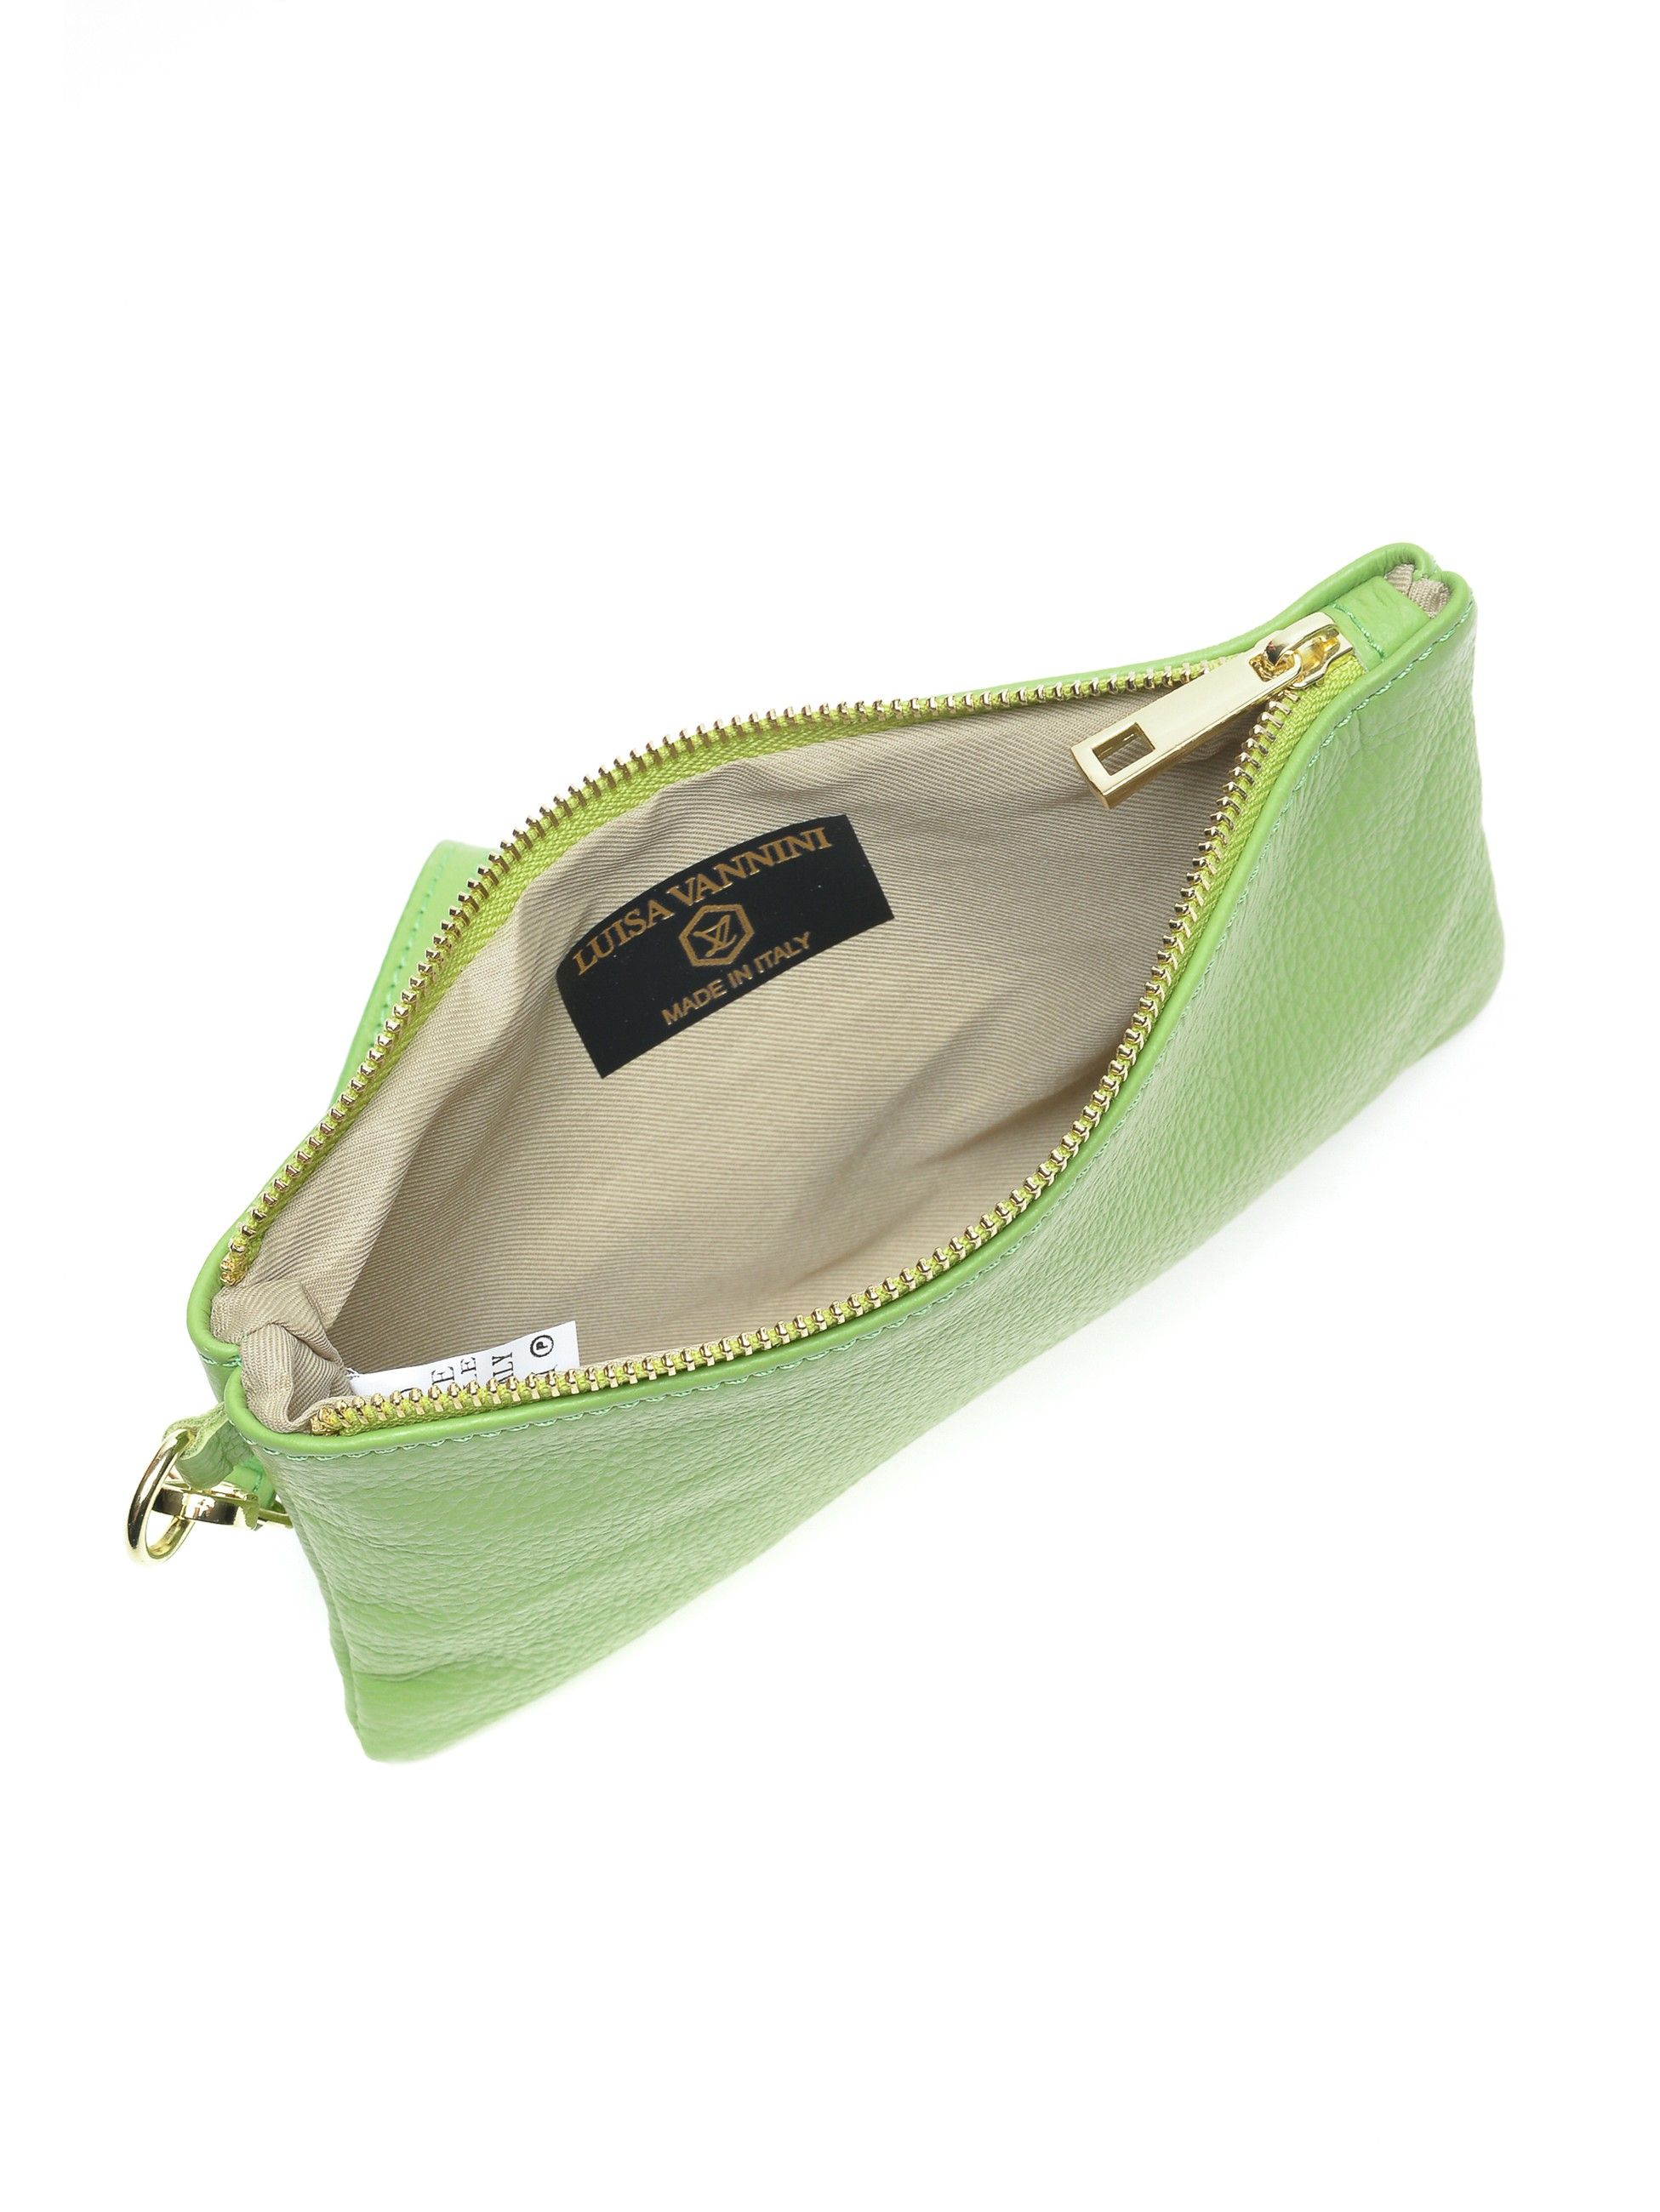 Clutch Bag
100% cow leather
Top zip closure
Dimensions (L): 13x22.5x / cm
Handle: 27 cm
Shoulder strap: /